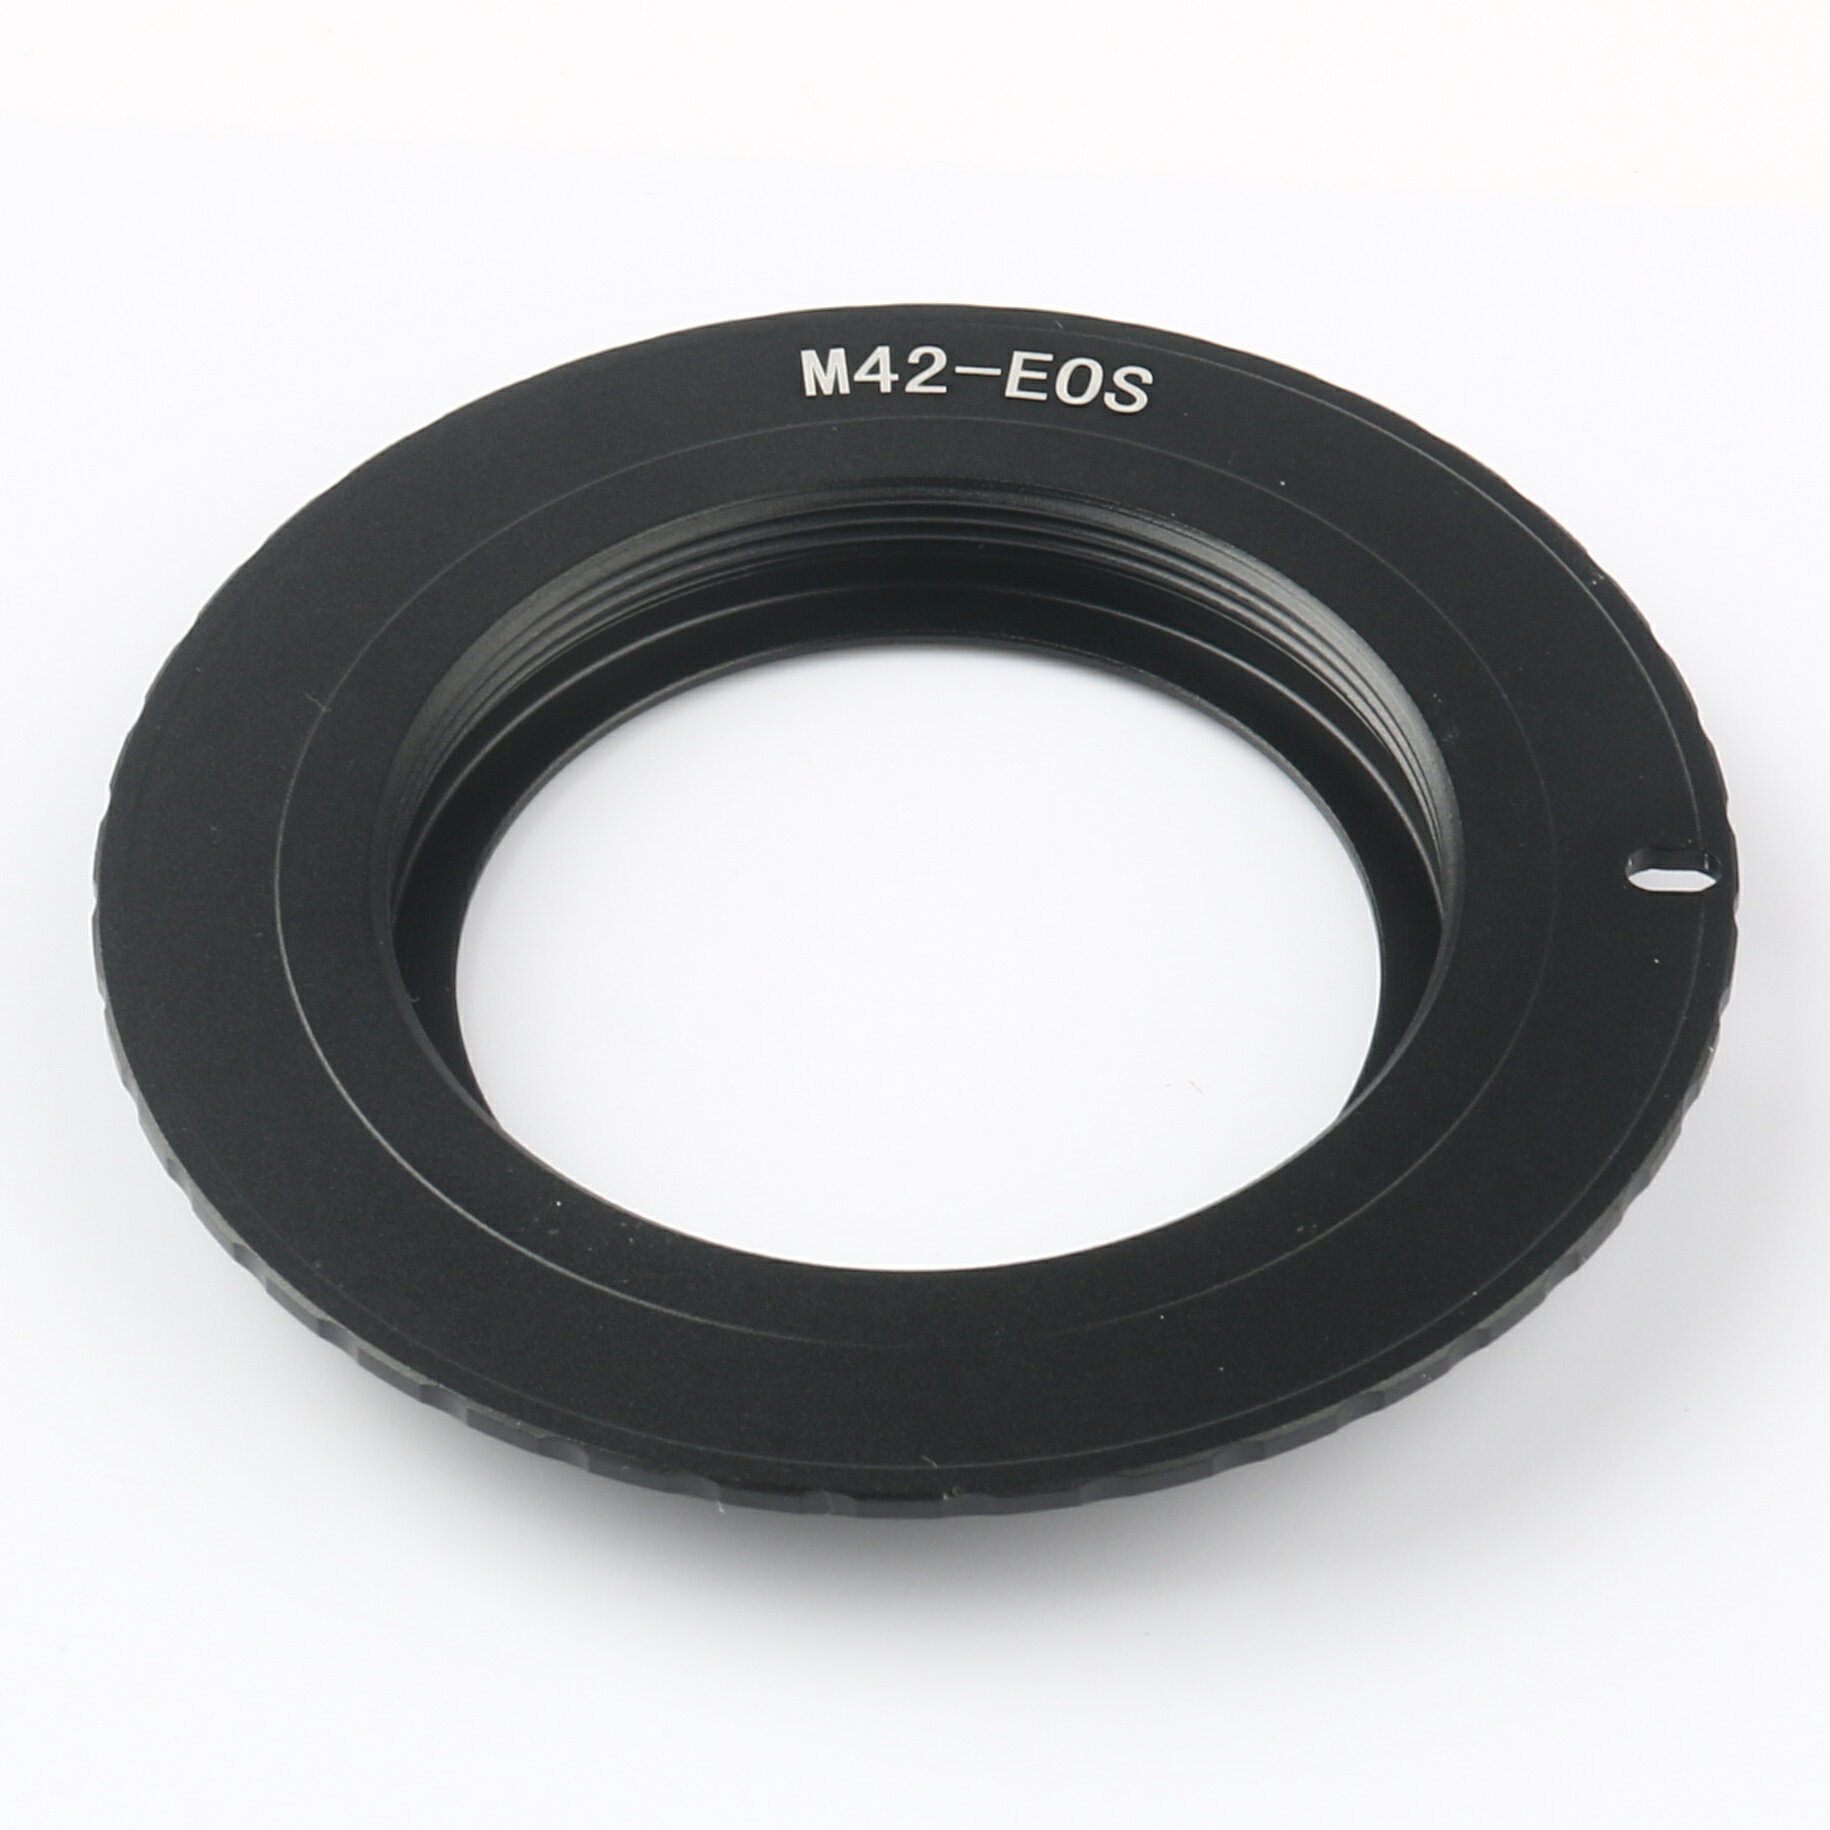 M42-EOS M42鏡頭轉佳能Canon EOS轉接環10代芯片